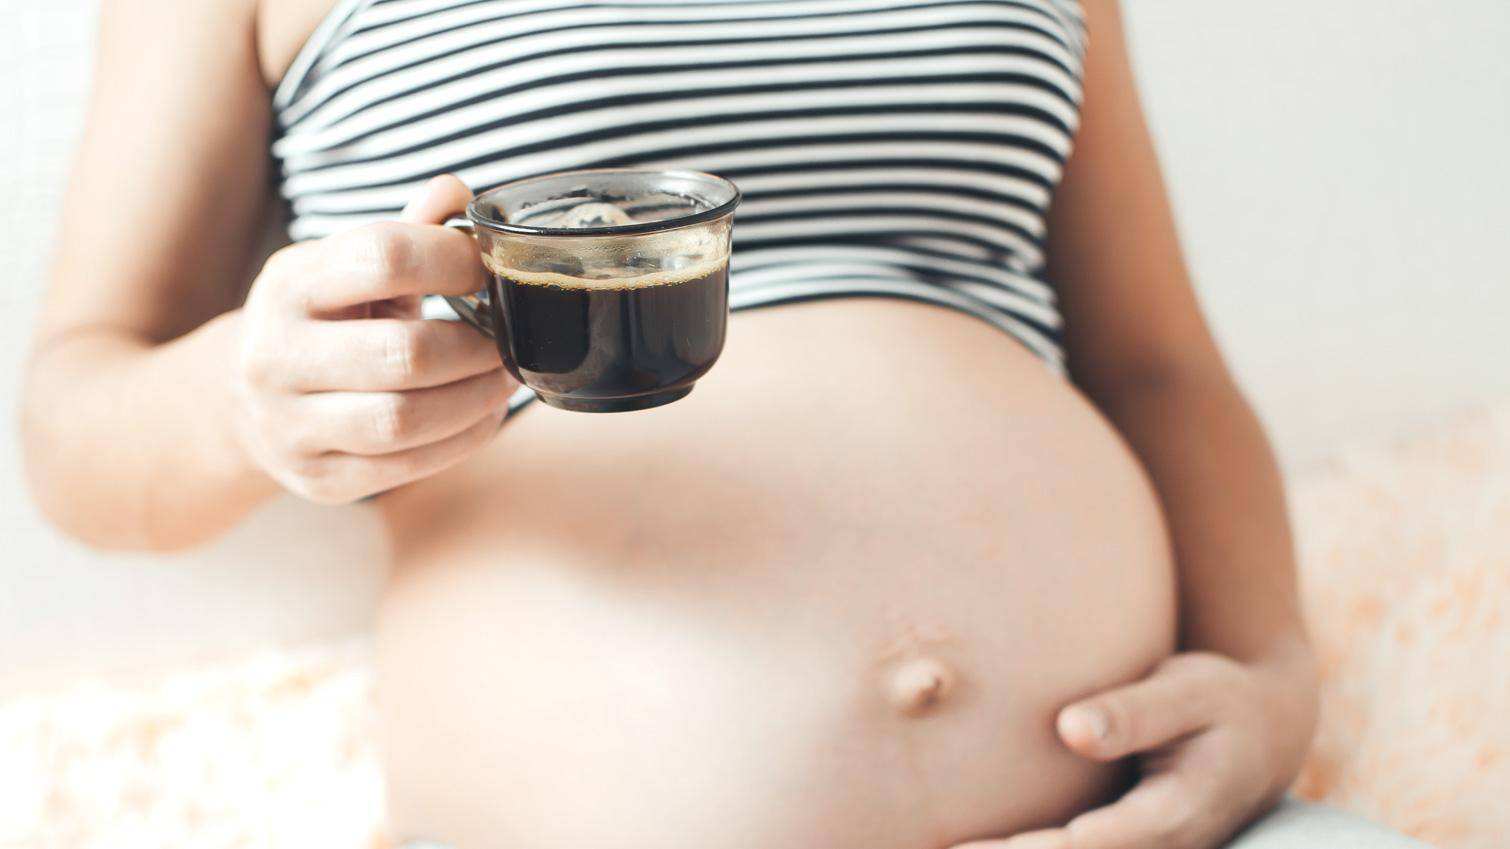 Польза кофе для женского здоровья: борьба с мигренью, влияние на гормональный фон и зачатие, профилактика цирроза